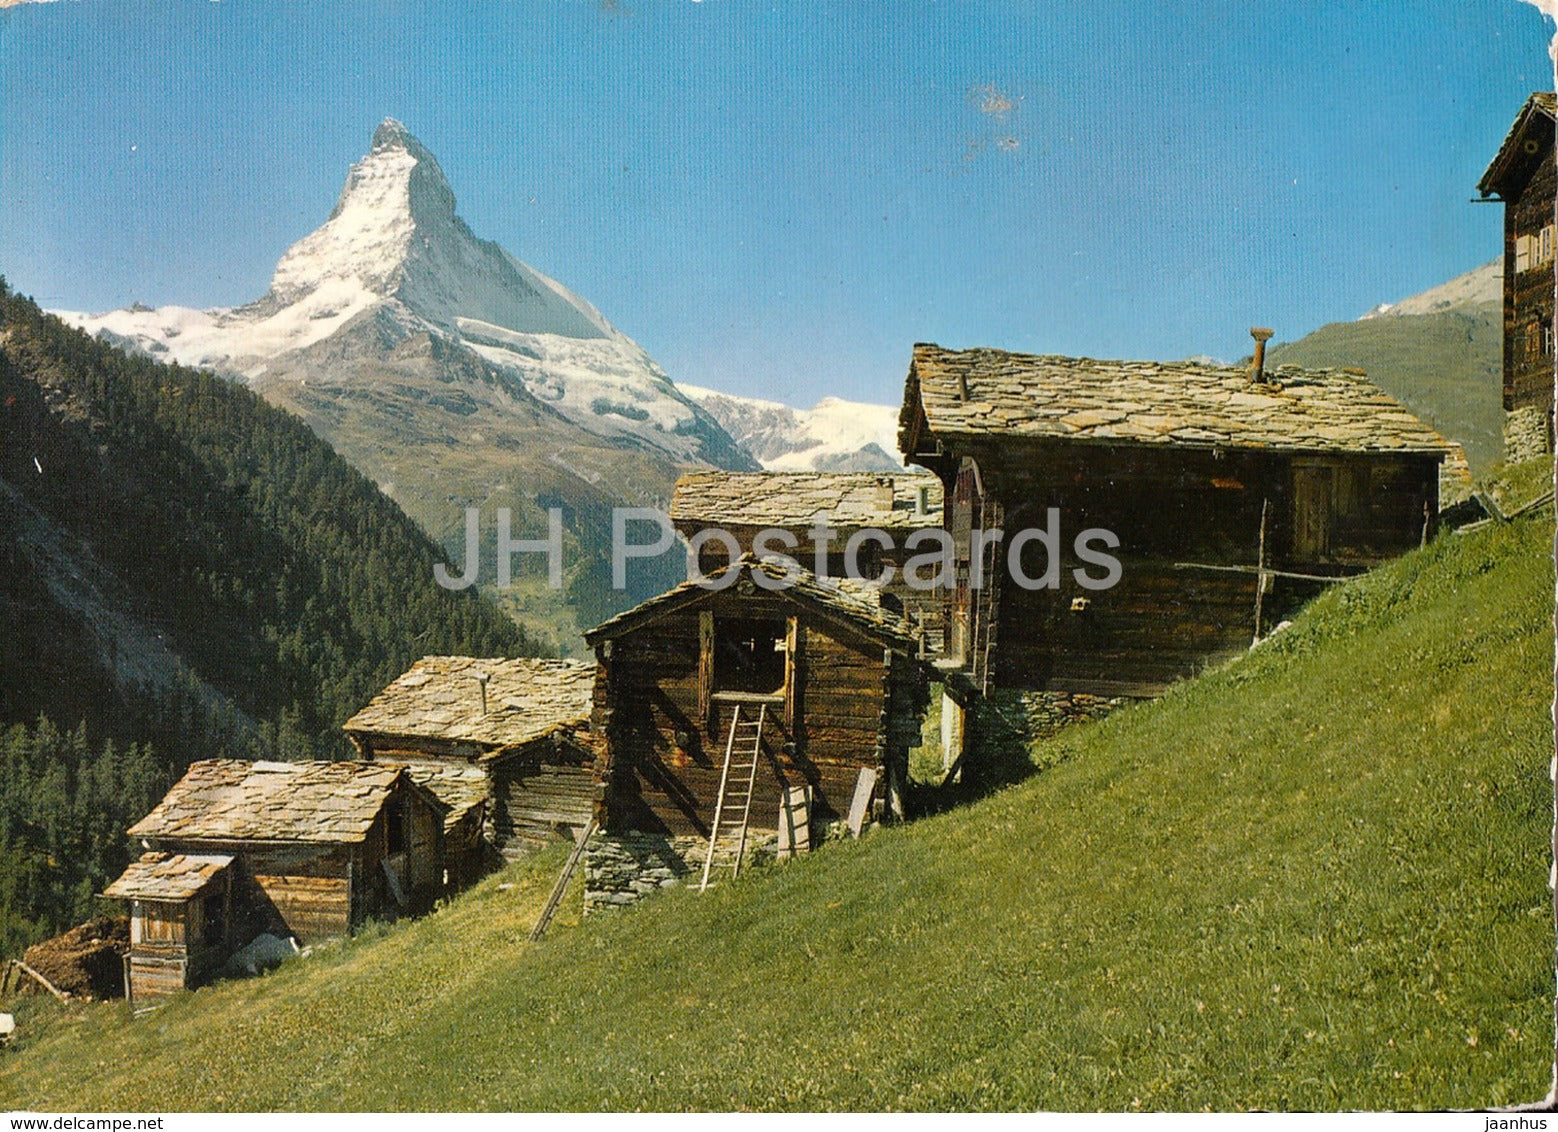 Zermatt - Bei Findelen mit Matterhorn 4476 m - 1960 - Switzerland - used - JH Postcards